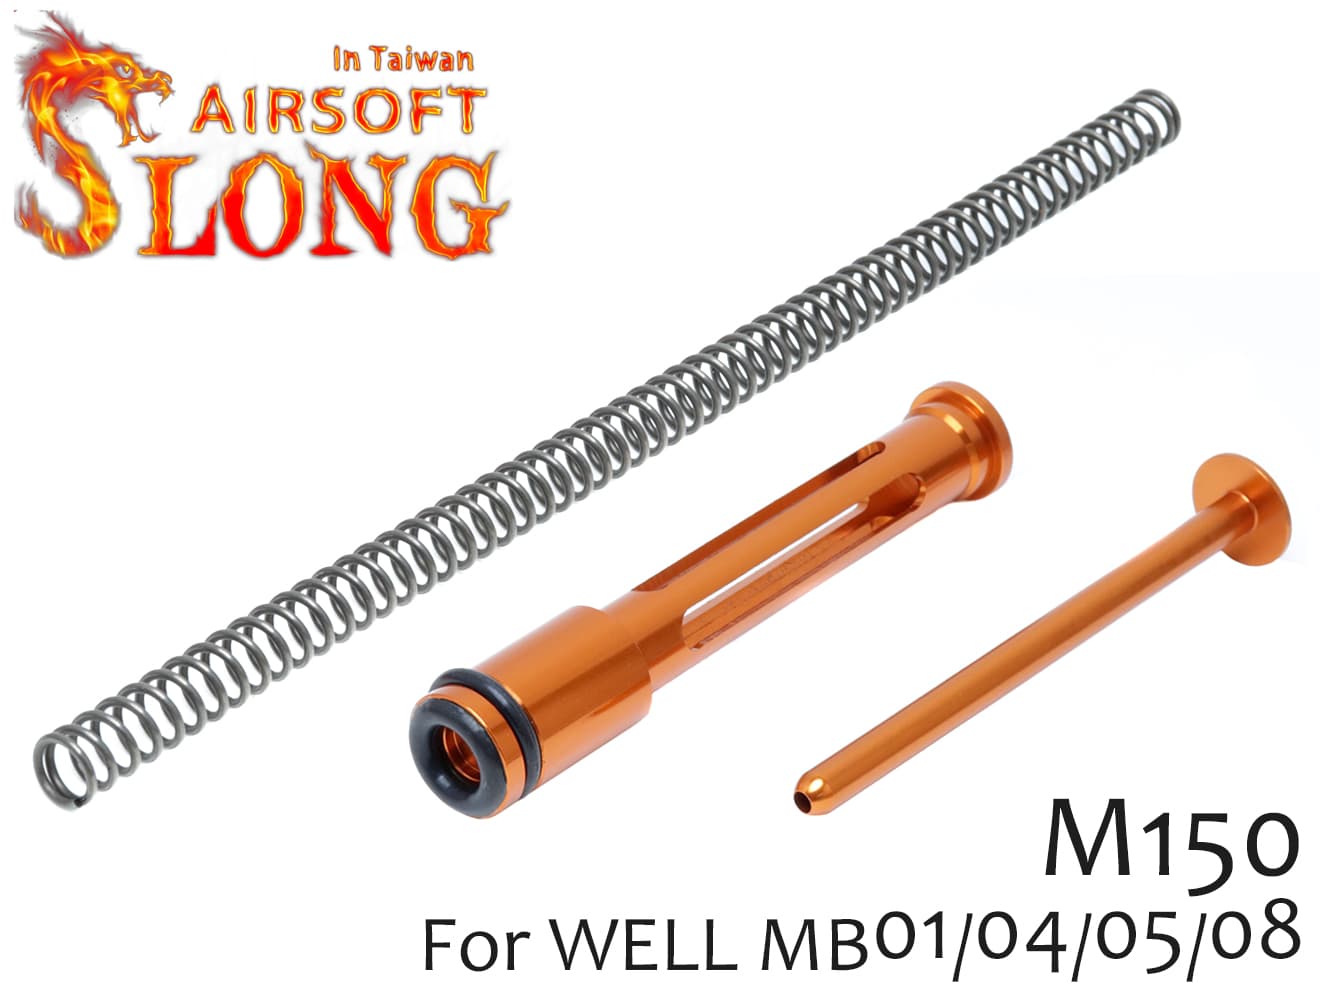 SLONG AIRSOFT アップグレードセット(ピストン/SPガイド/M150スプリング) WELL MB01(L96)◆ウェル製Type-96シリーズ対応 強度大幅アップ 流速チューンのベースに